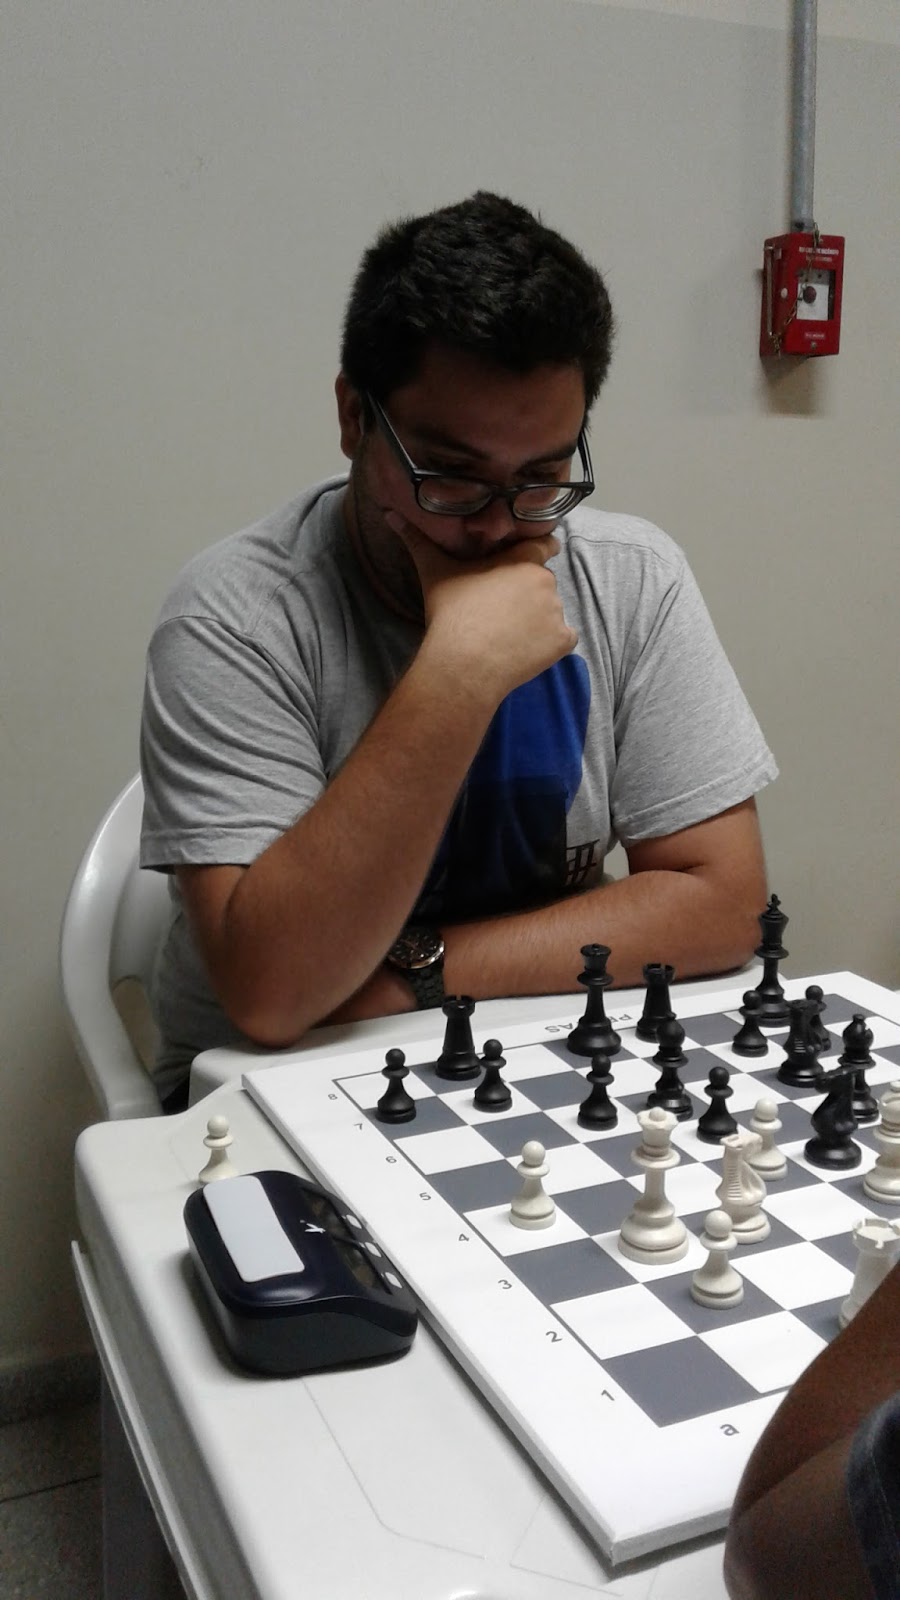 Clube de Xadrez Scacorum Ludus: A peça da rainha aparece no xadrez (parte  um)